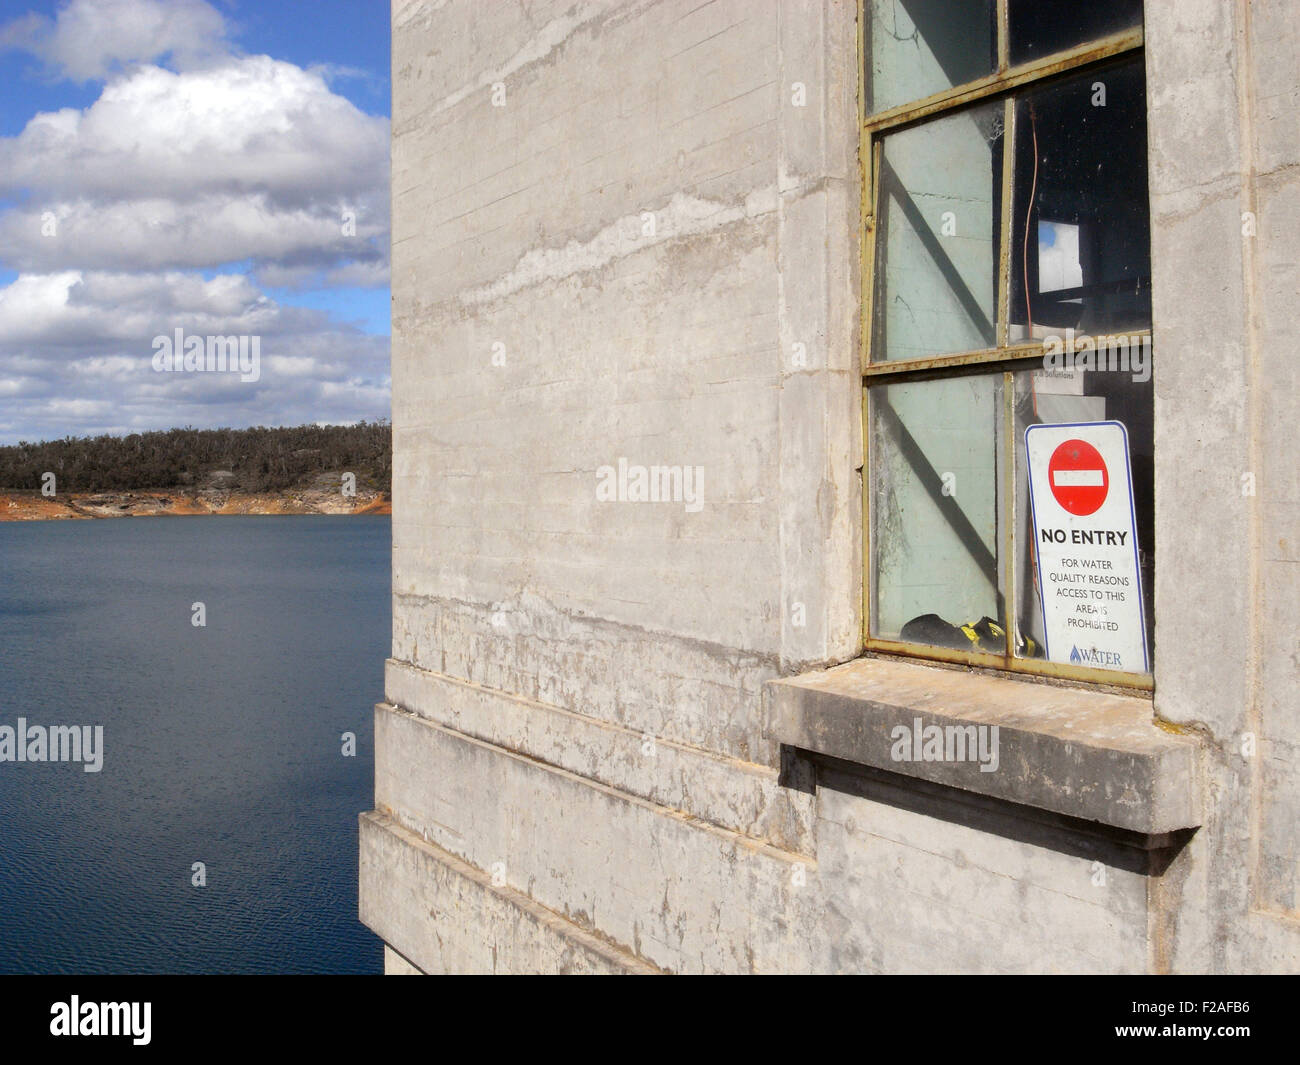 Pas d'entrée pour des raisons de qualité de l'eau signe à Canning Dam, à l'est de Perth, Australie occidentale. Pas de PR Banque D'Images